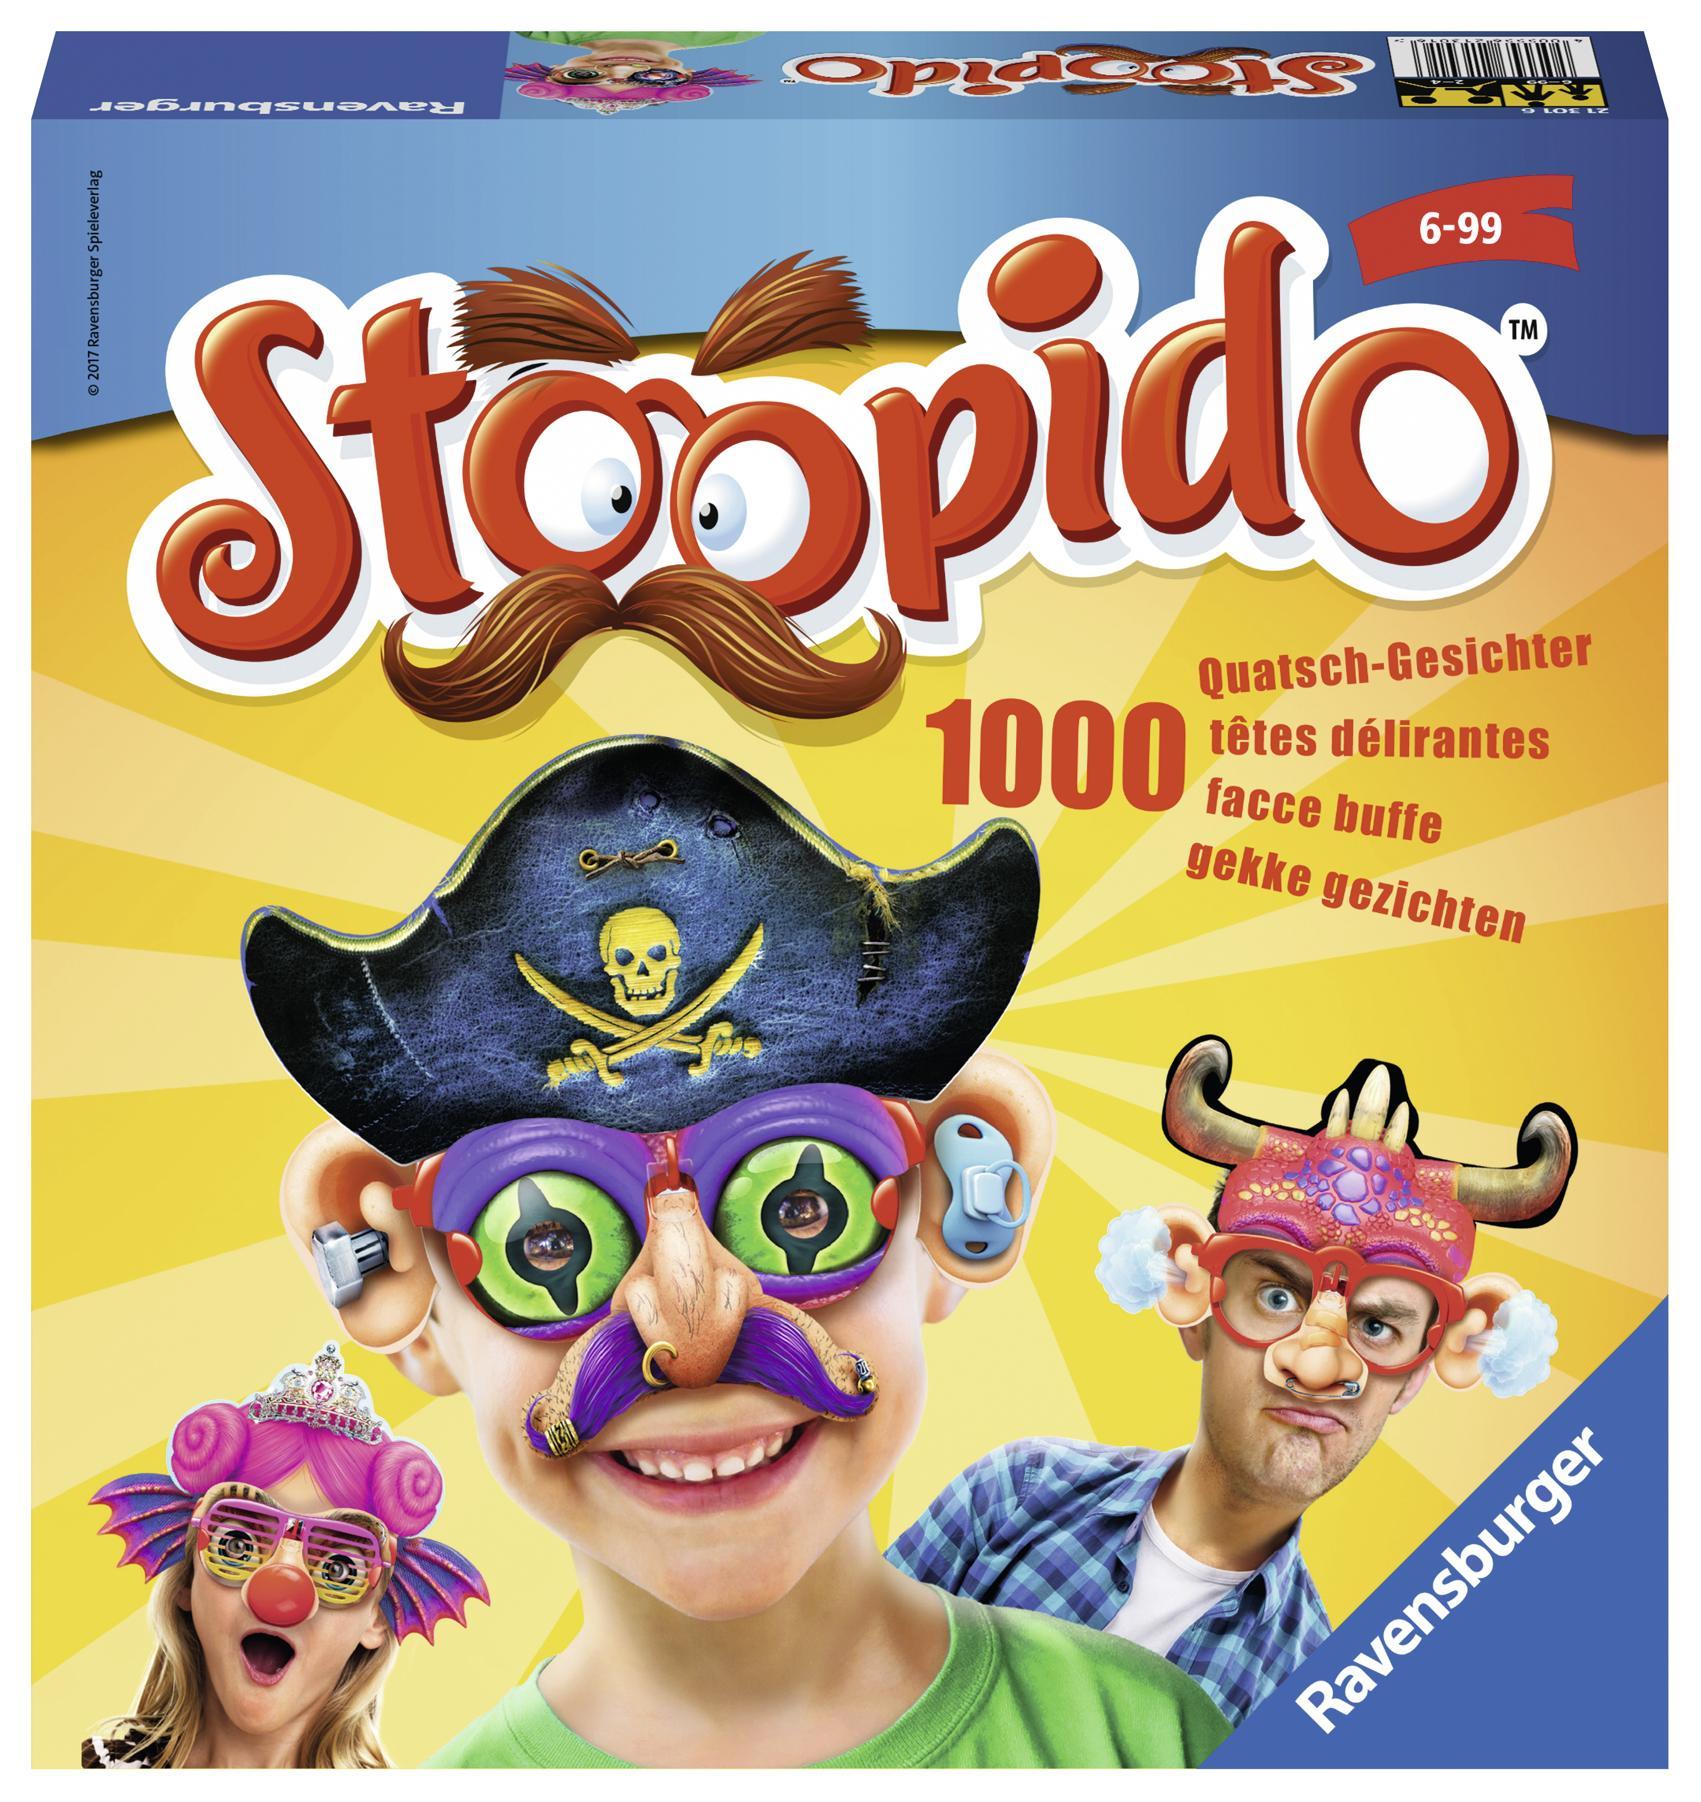 Stoopido 5 (1)